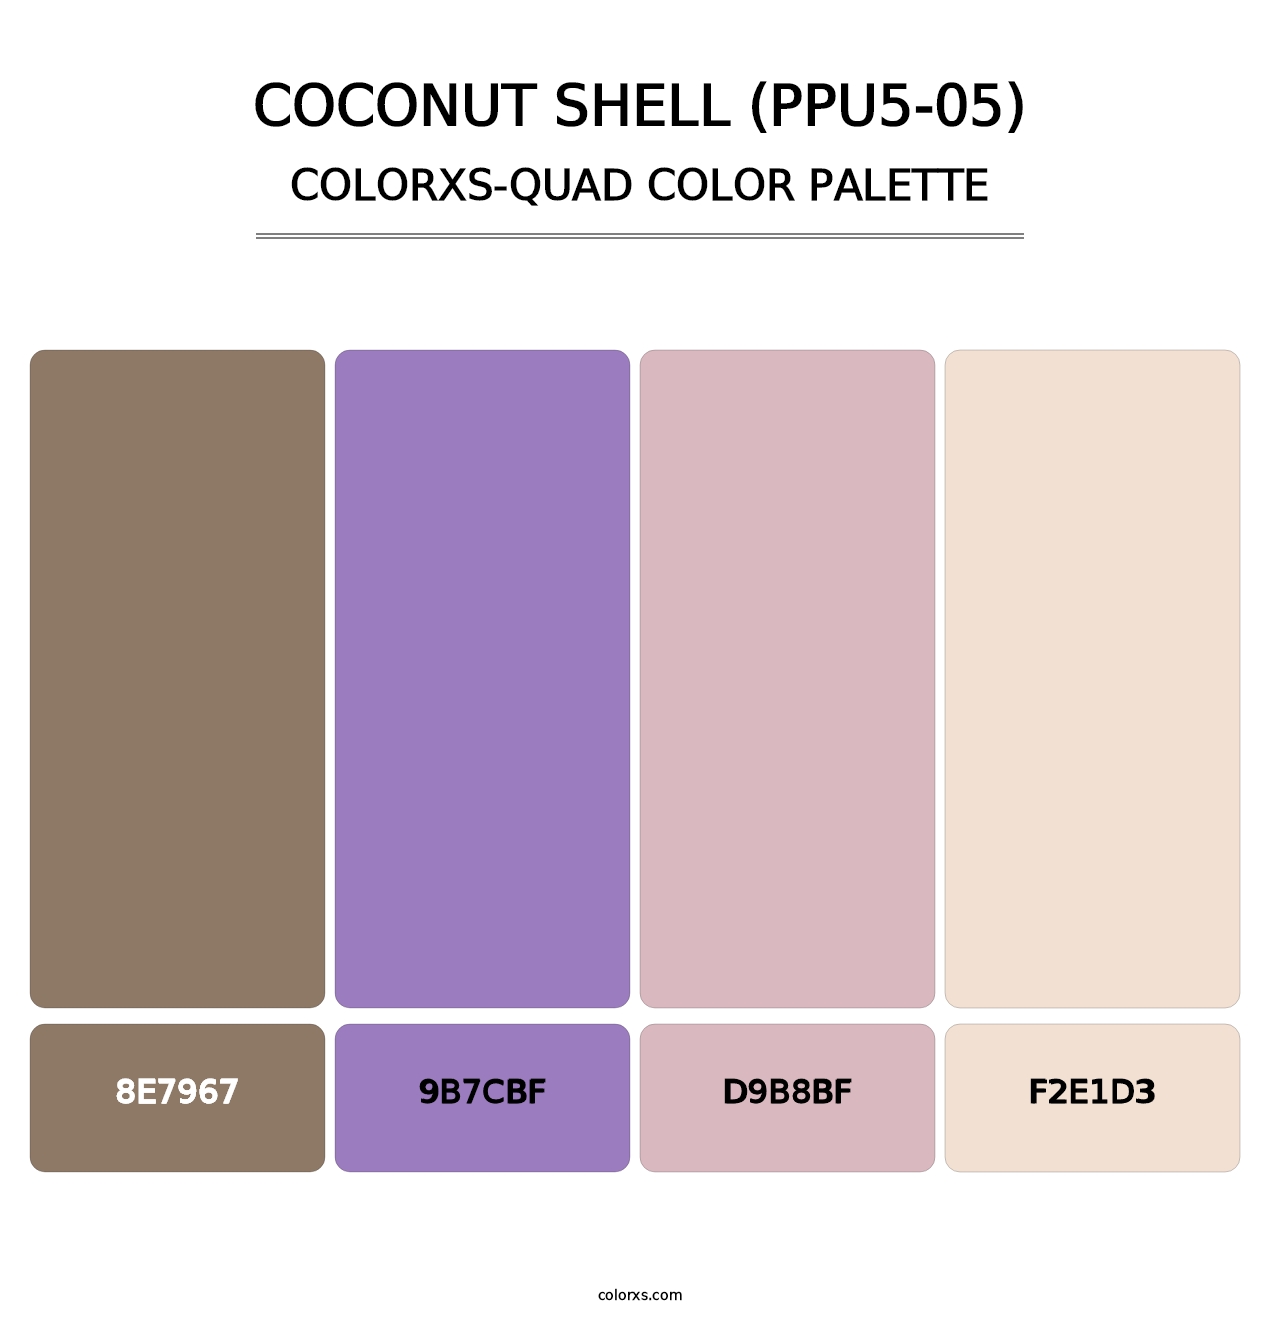 Coconut Shell (PPU5-05) - Colorxs Quad Palette